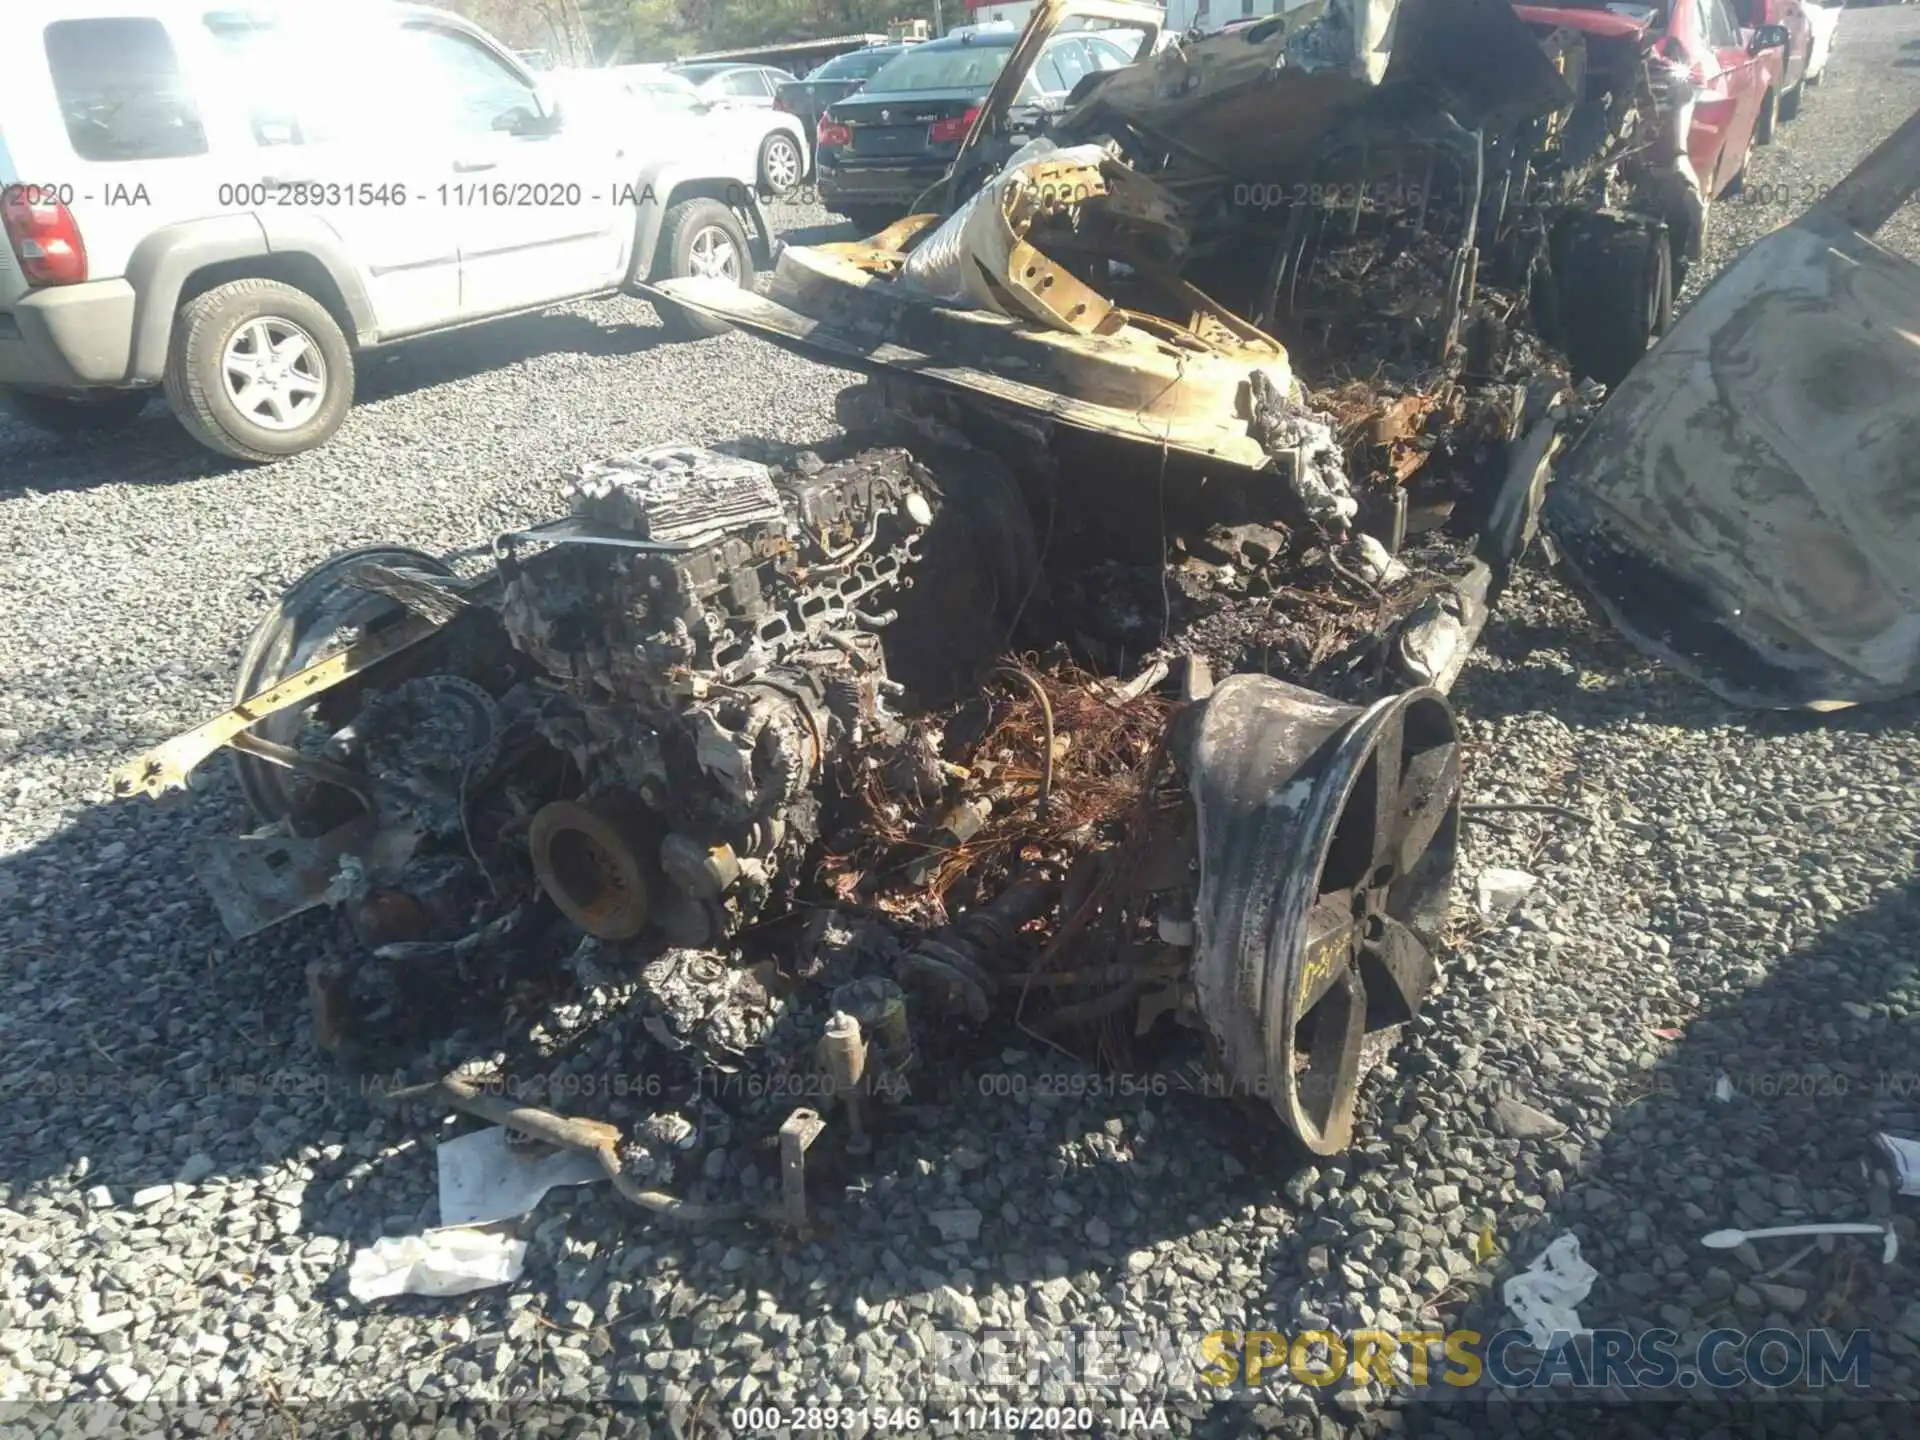 6 Фотография поврежденного автомобиля SALE97EU0L2018824 LAND ROVER DEFENDER 2020